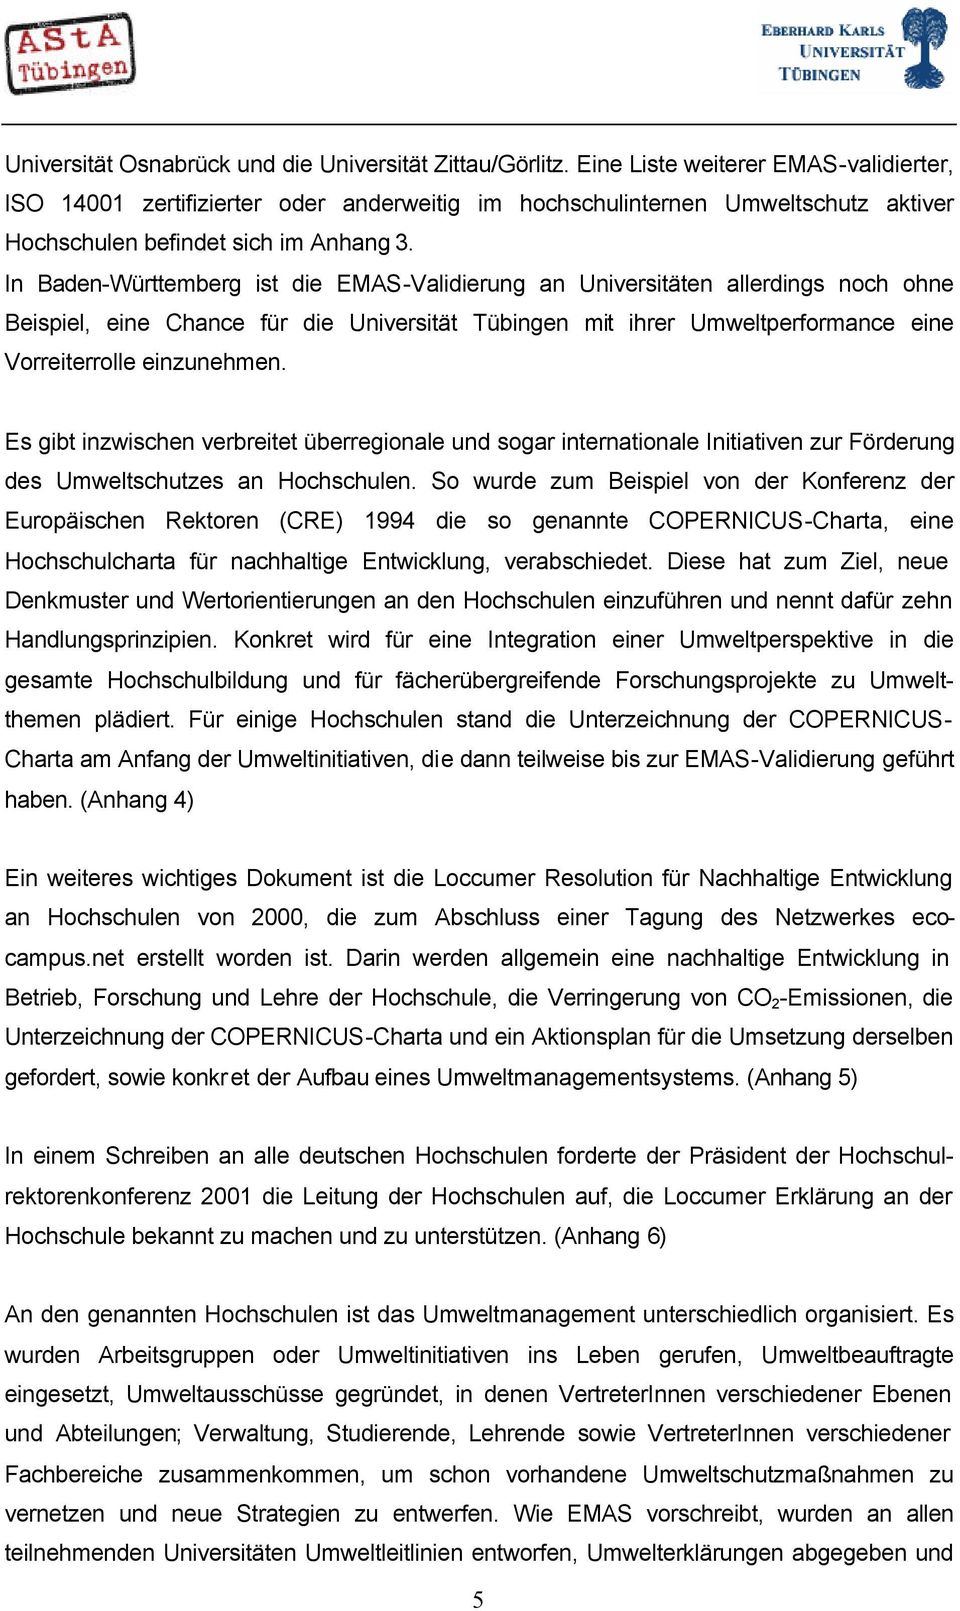 In Baden-Württemberg ist die EMAS-Validierung an Universitäten allerdings noch ohne Beispiel, eine Chance für die Universität Tübingen mit ihrer Umweltperformance eine Vorreiterrolle einzunehmen.